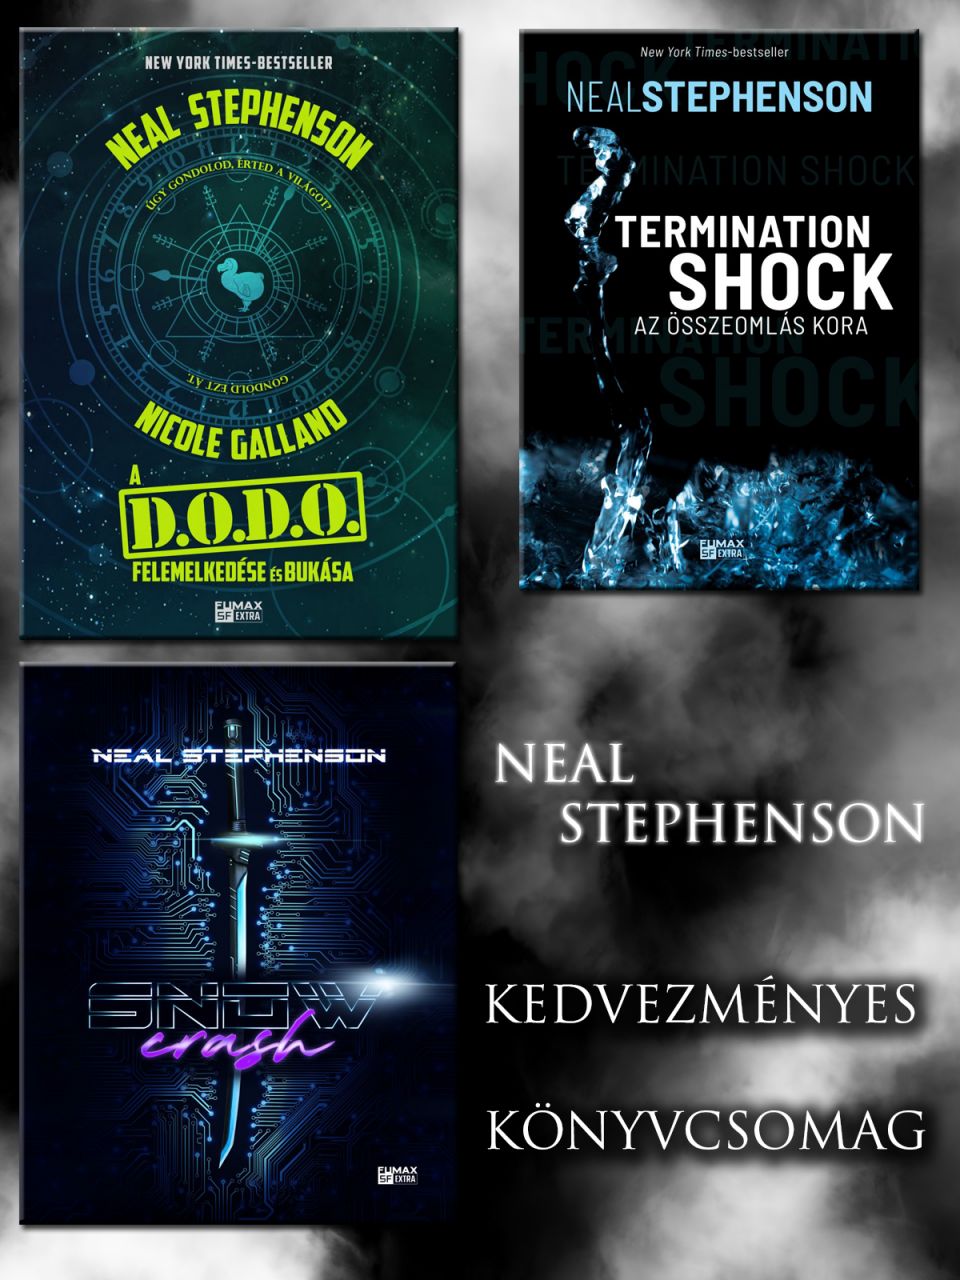 Neal Stephenson akciós sci-fi könyvcsomag (A DODO felemelkedése és bukása, Snow Crash, Termination Shock)